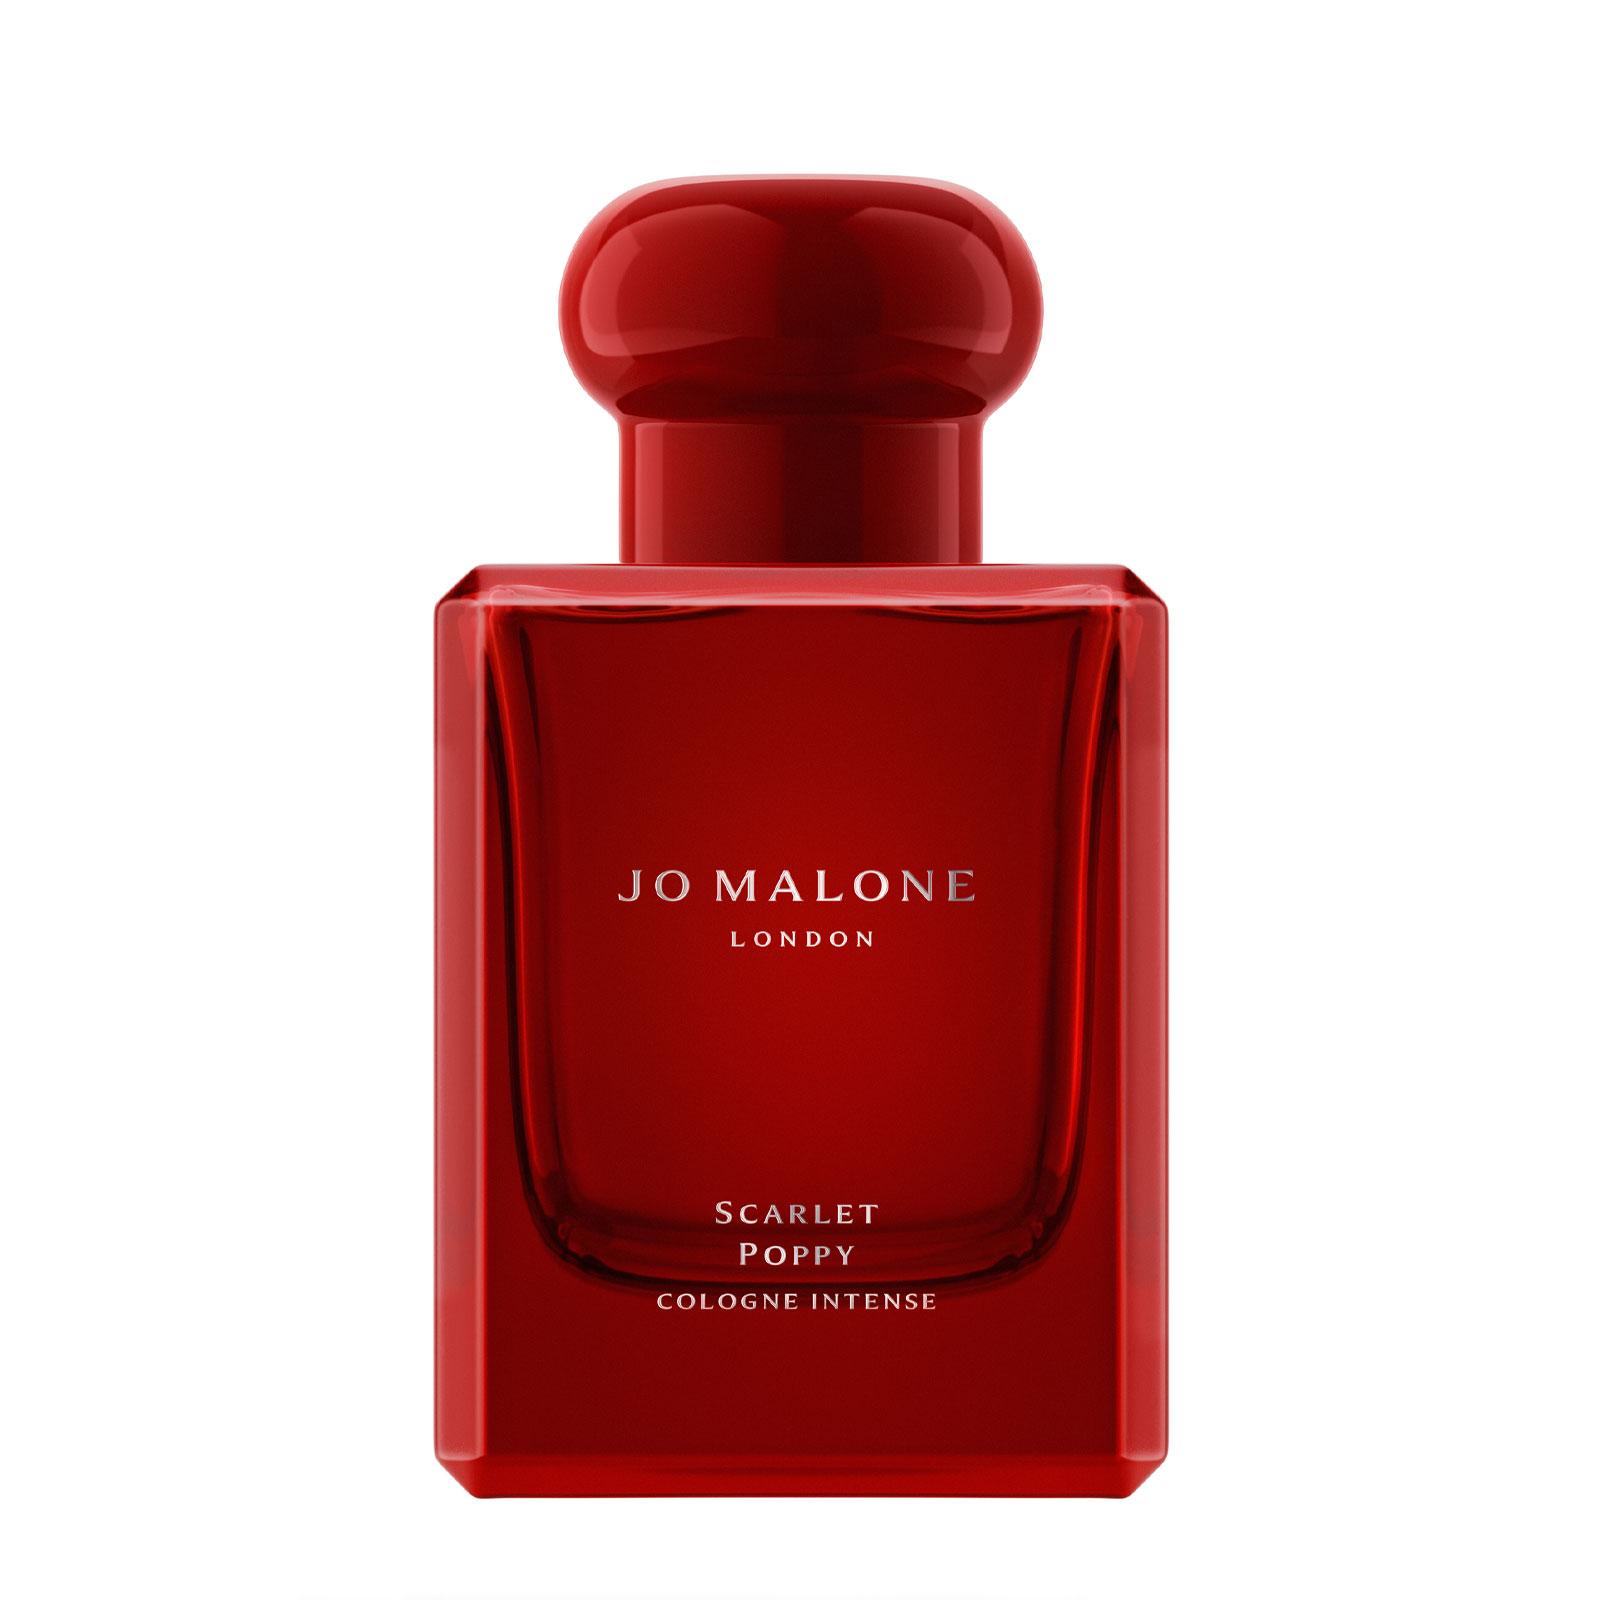 Jo Malone London Scarlet Poppy 50ml Cologne Intense - Feelunique